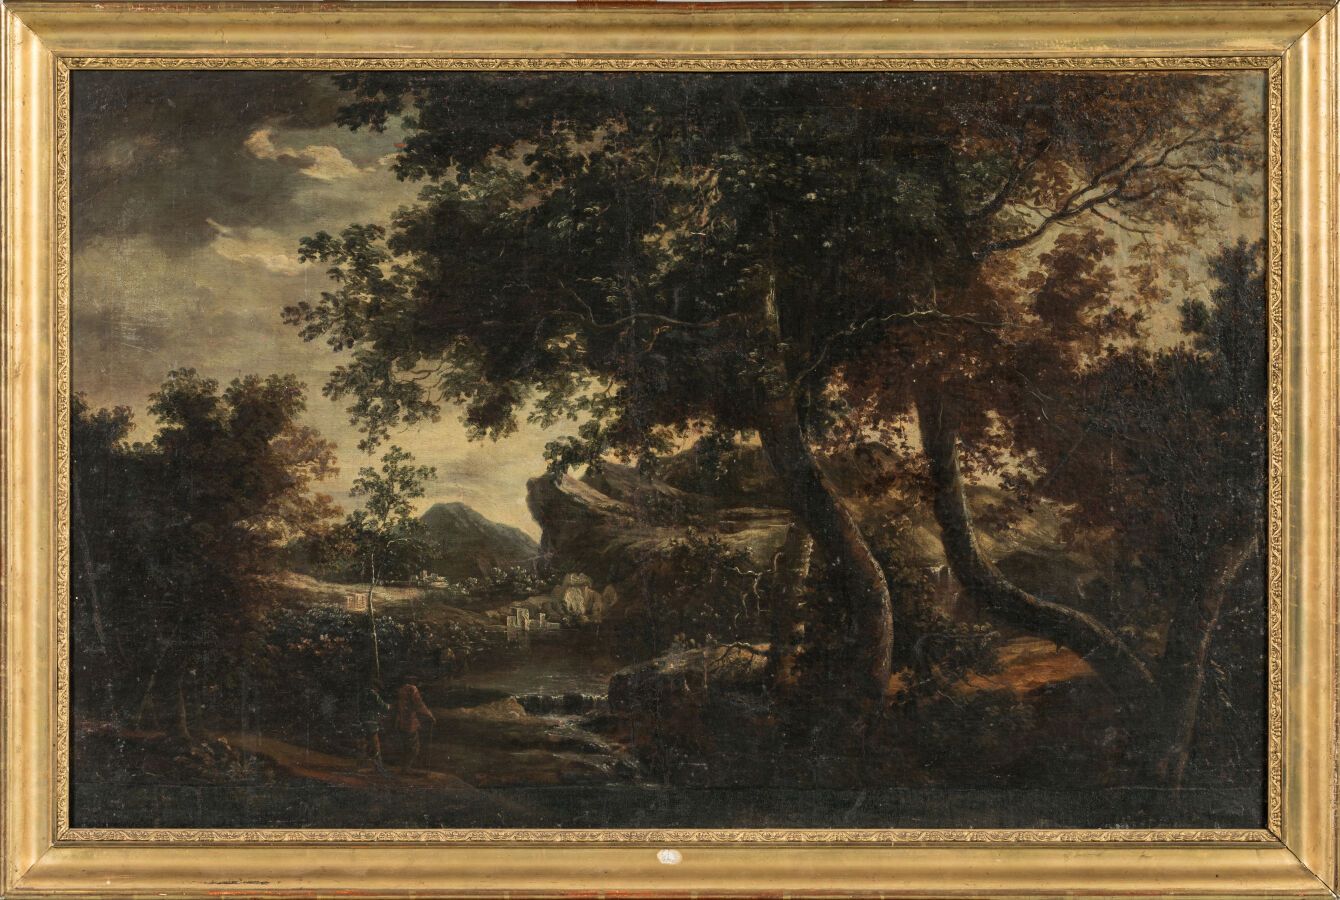 Null 18 世纪早期的佛兰德斯画派。"有泉水和行人的风景"。布面油画，66 x 103 厘米。 
小幅修复，润饰。
有画框。